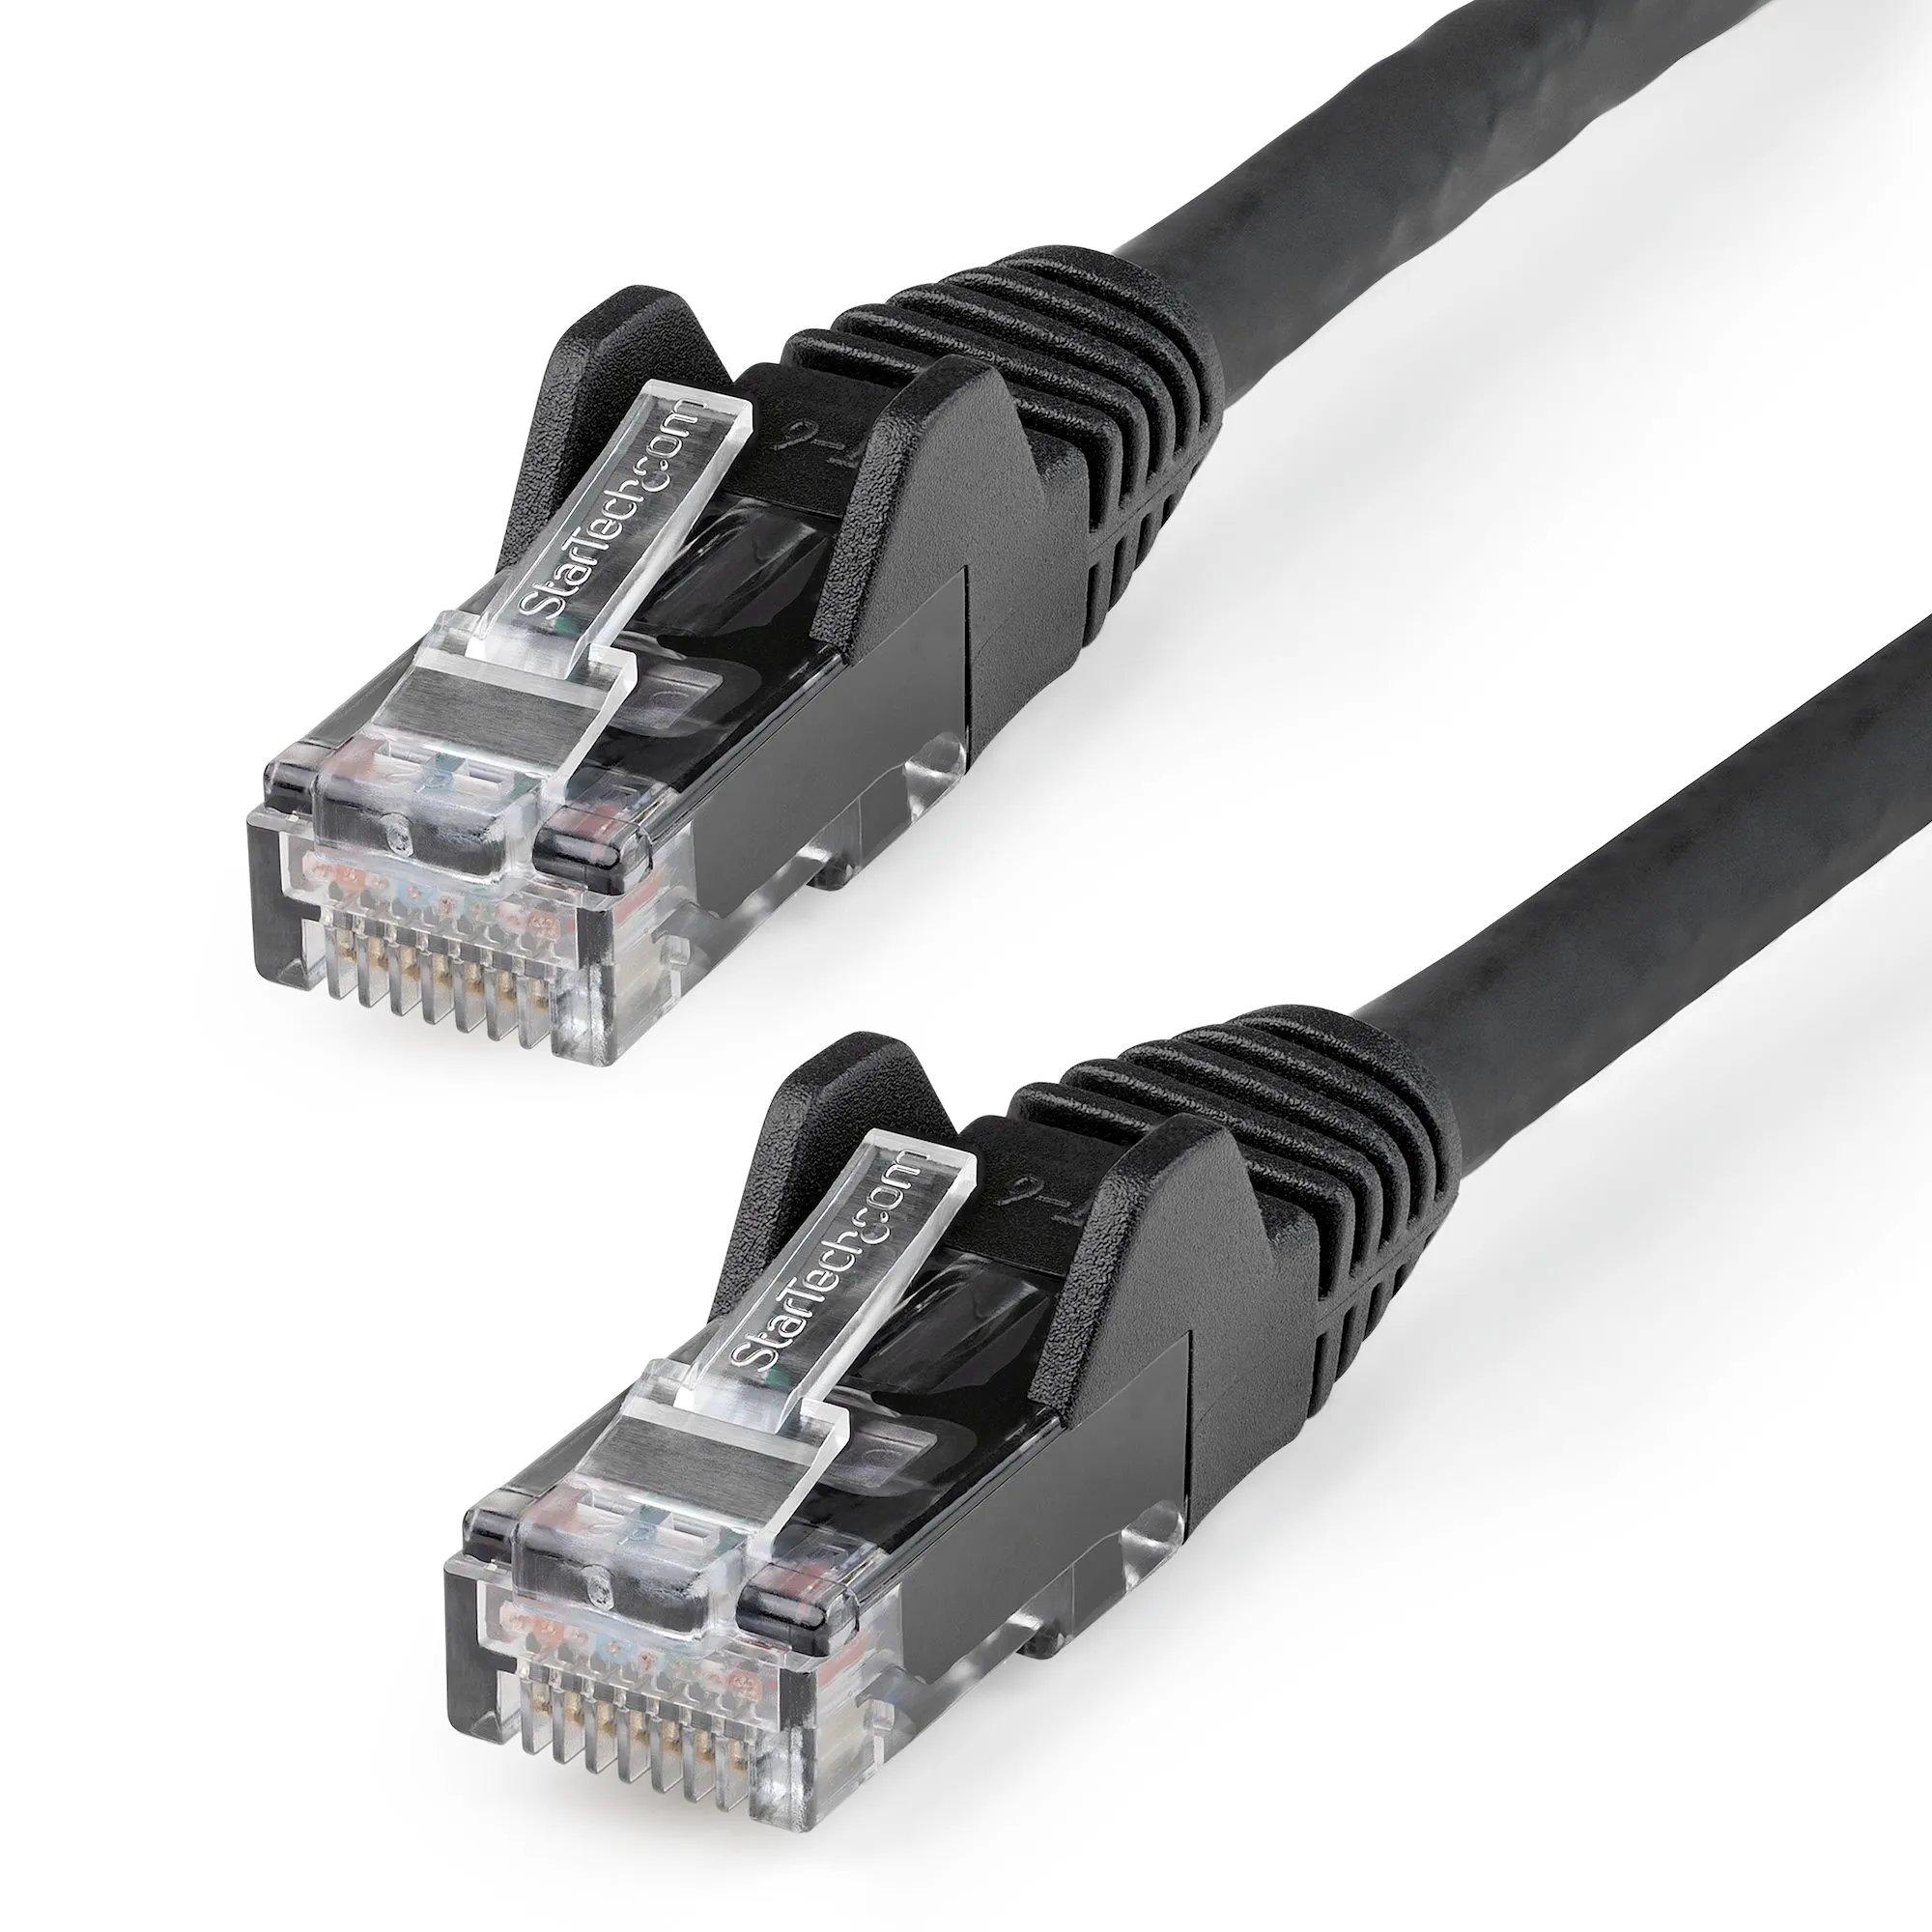 Vente StarTech.com Câble Ethernet CAT6 15m - LSZH (Low StarTech.com au meilleur prix - visuel 4